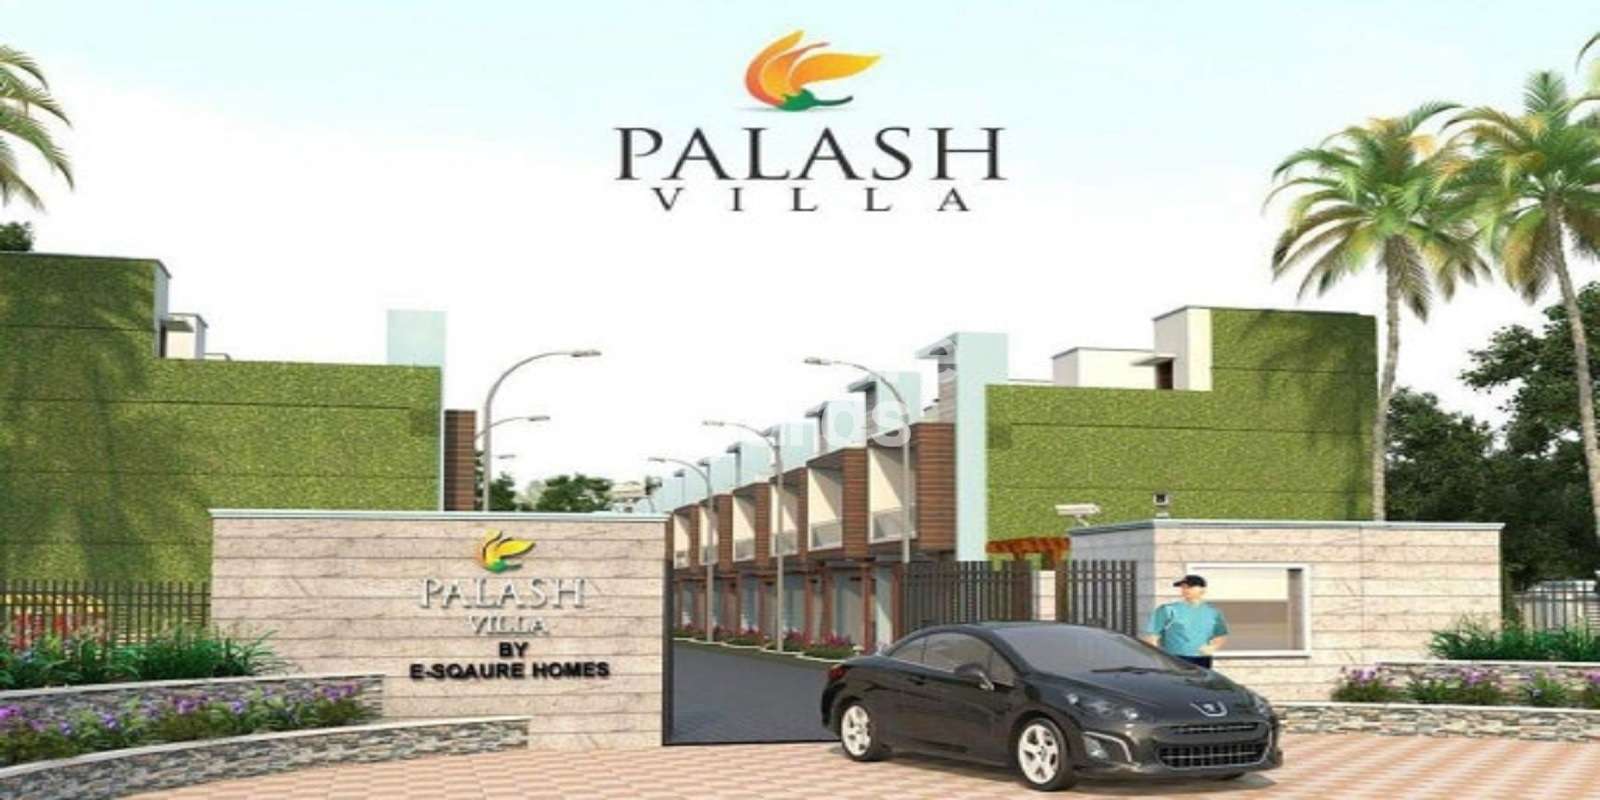 E Square Palash Villa Cover Image